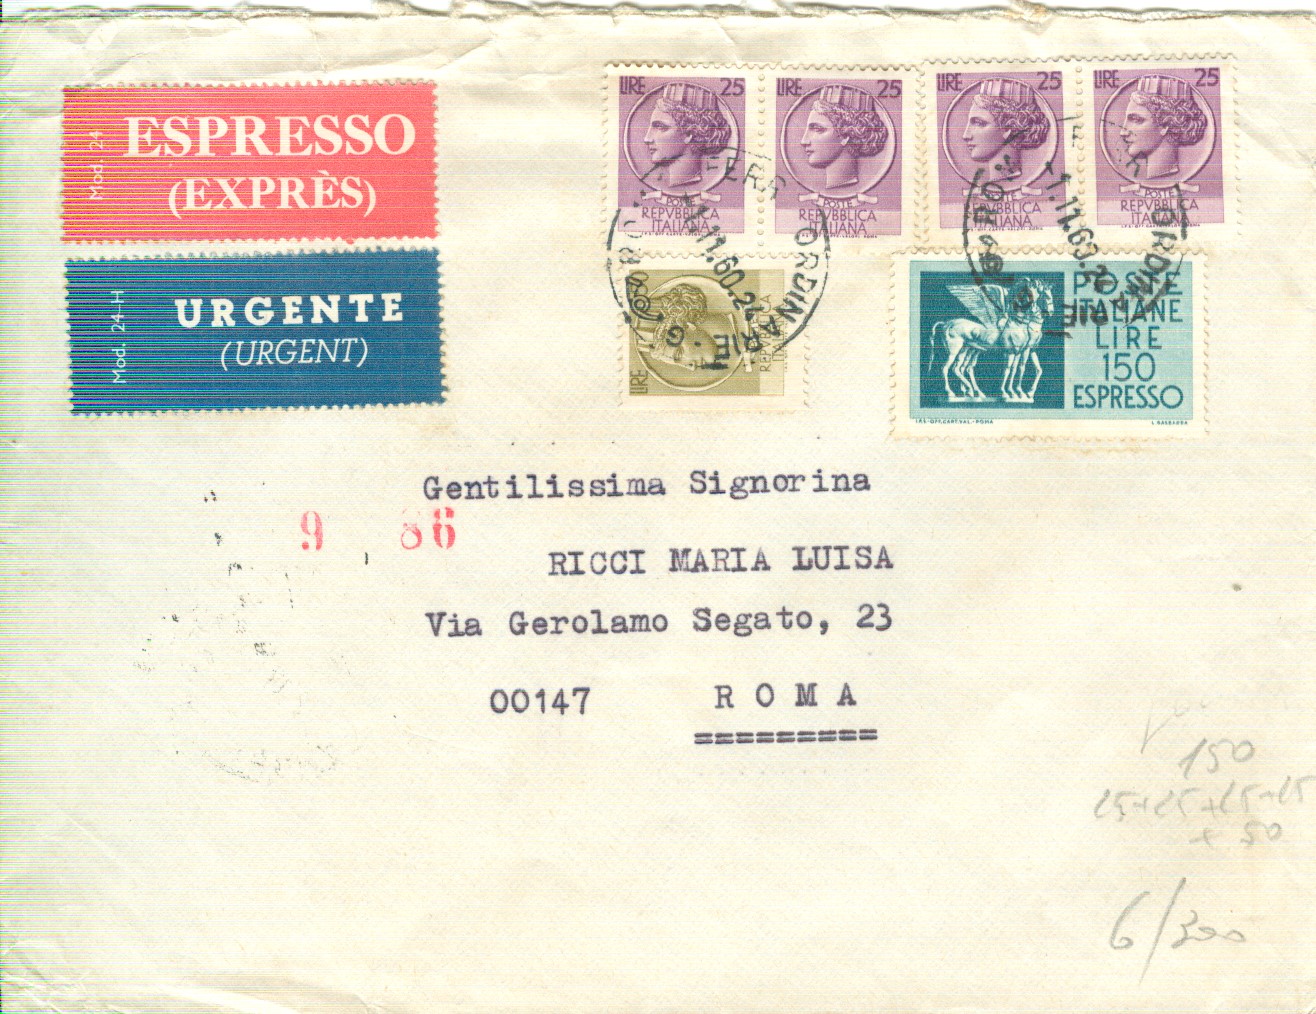 51835 - SIRACUSANA .25x4+50+150 ESPRESSO,LETTERA ESPRESSO,1960-TIMBRO POSTE ROMA